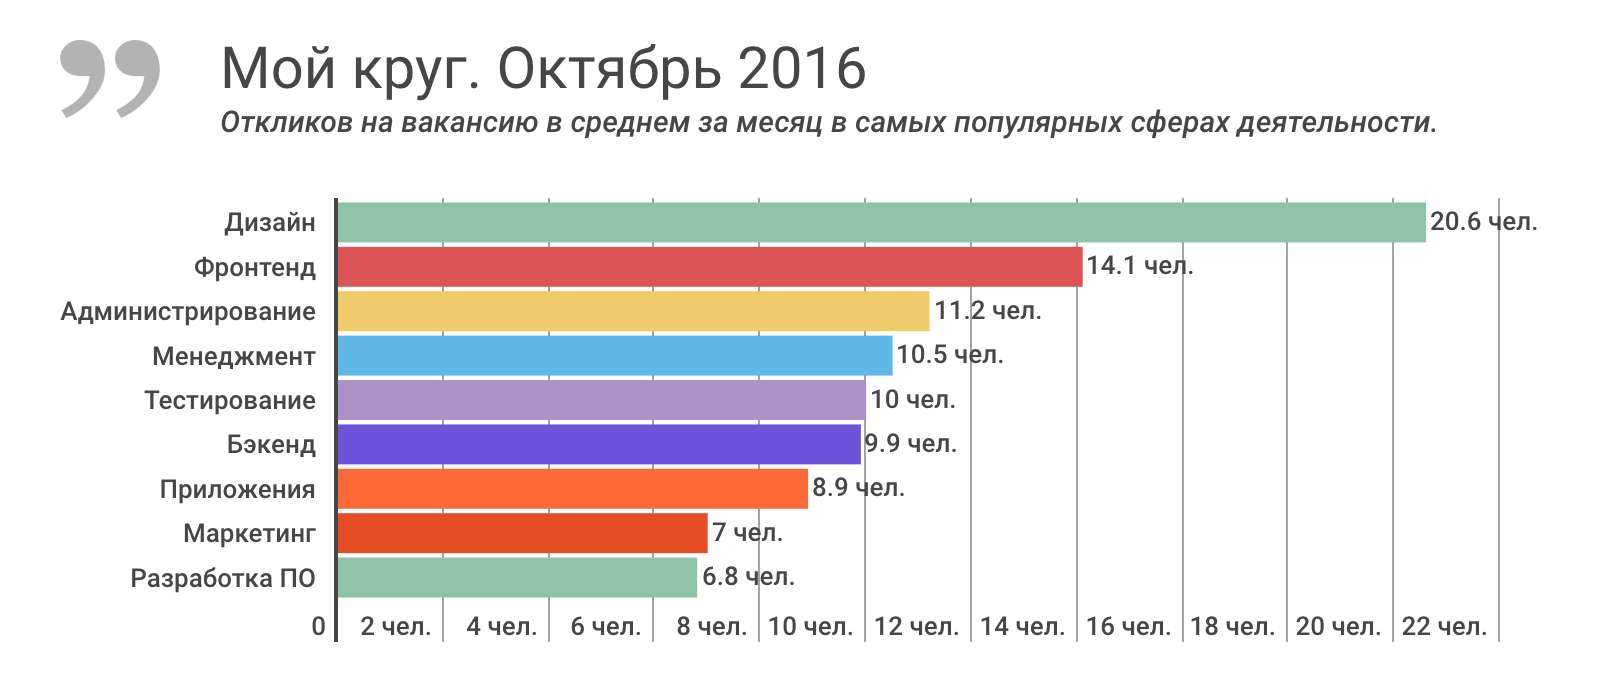 Отчет о результатах «Моего круга» за октябрь 2016, и самые популярные вакансии месяца - 1